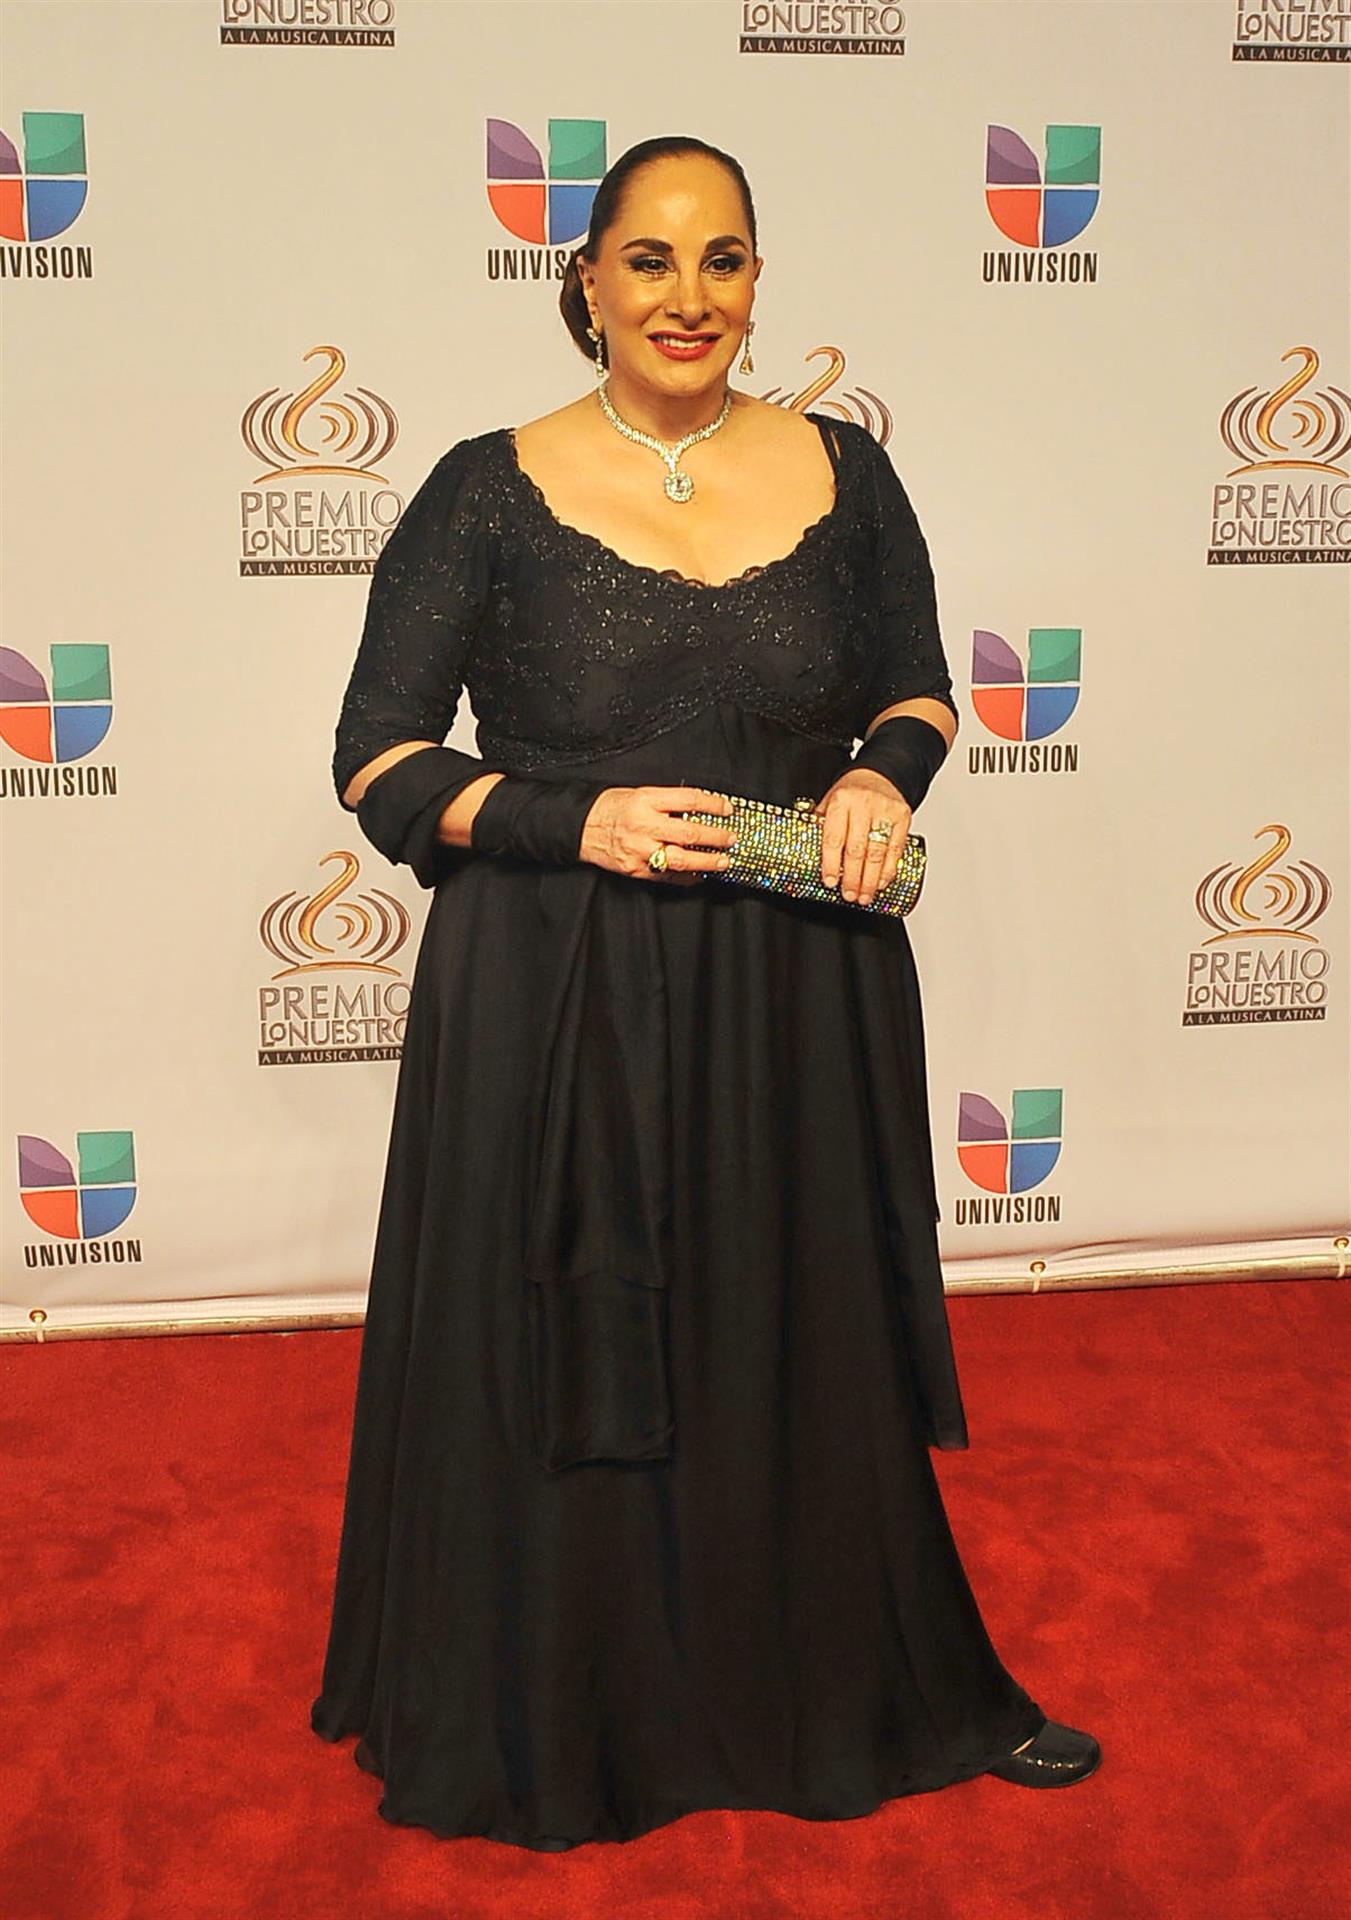 La actriz mexicana Susana Dosamantes, imagen de archivo. EFE/Gaston De Cardenas
